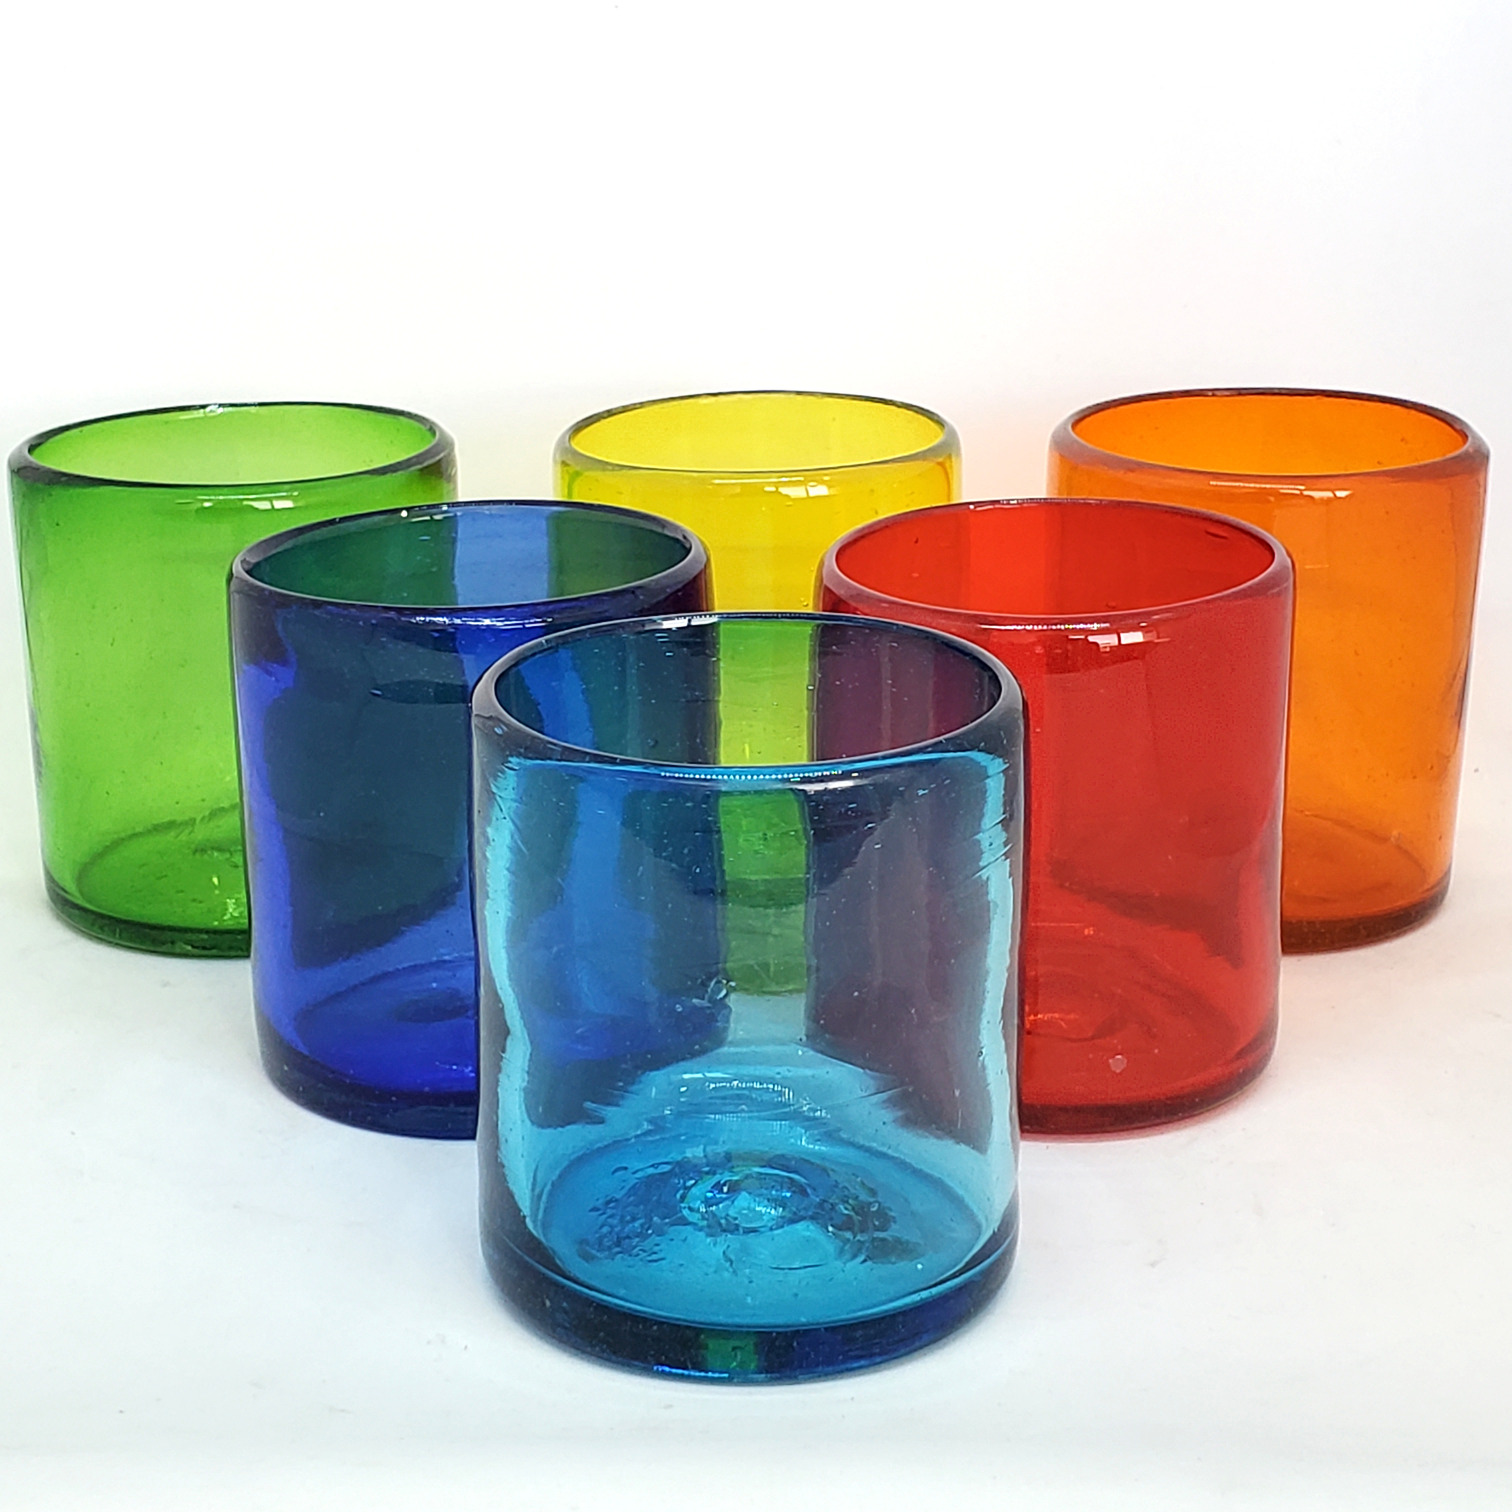 VIDRIO SOPLADO al Mayoreo / s 9 oz Arcoiris (set de 6) / Éstos artesanales vasos le darán un toque colorido a su bebida favorita.